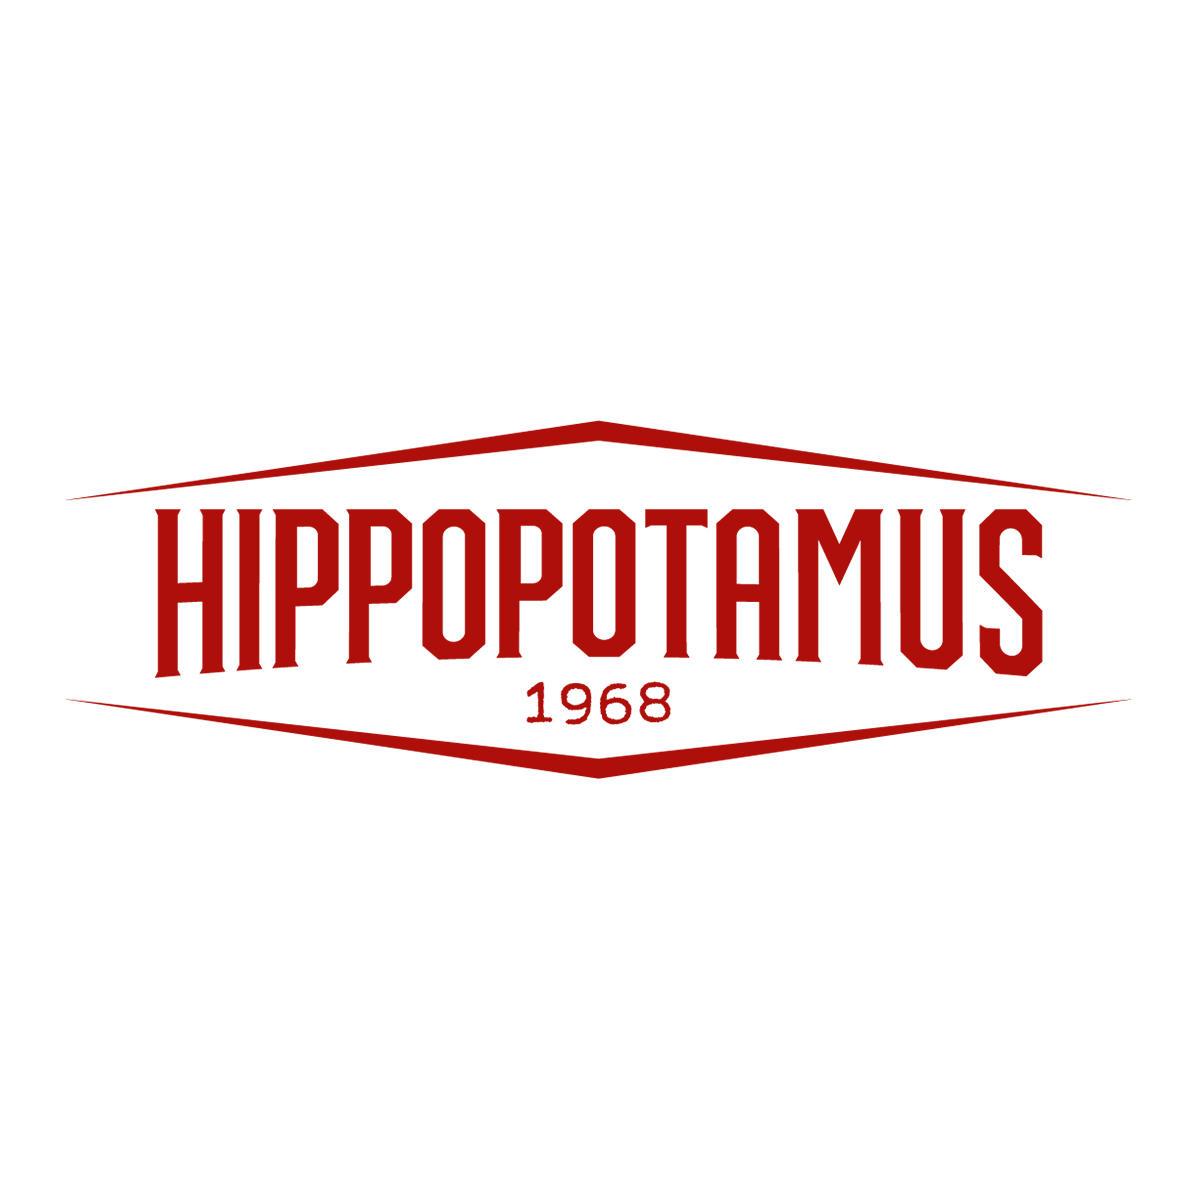 Hippopotamus Steakhouse Les Pennes Mirabeau